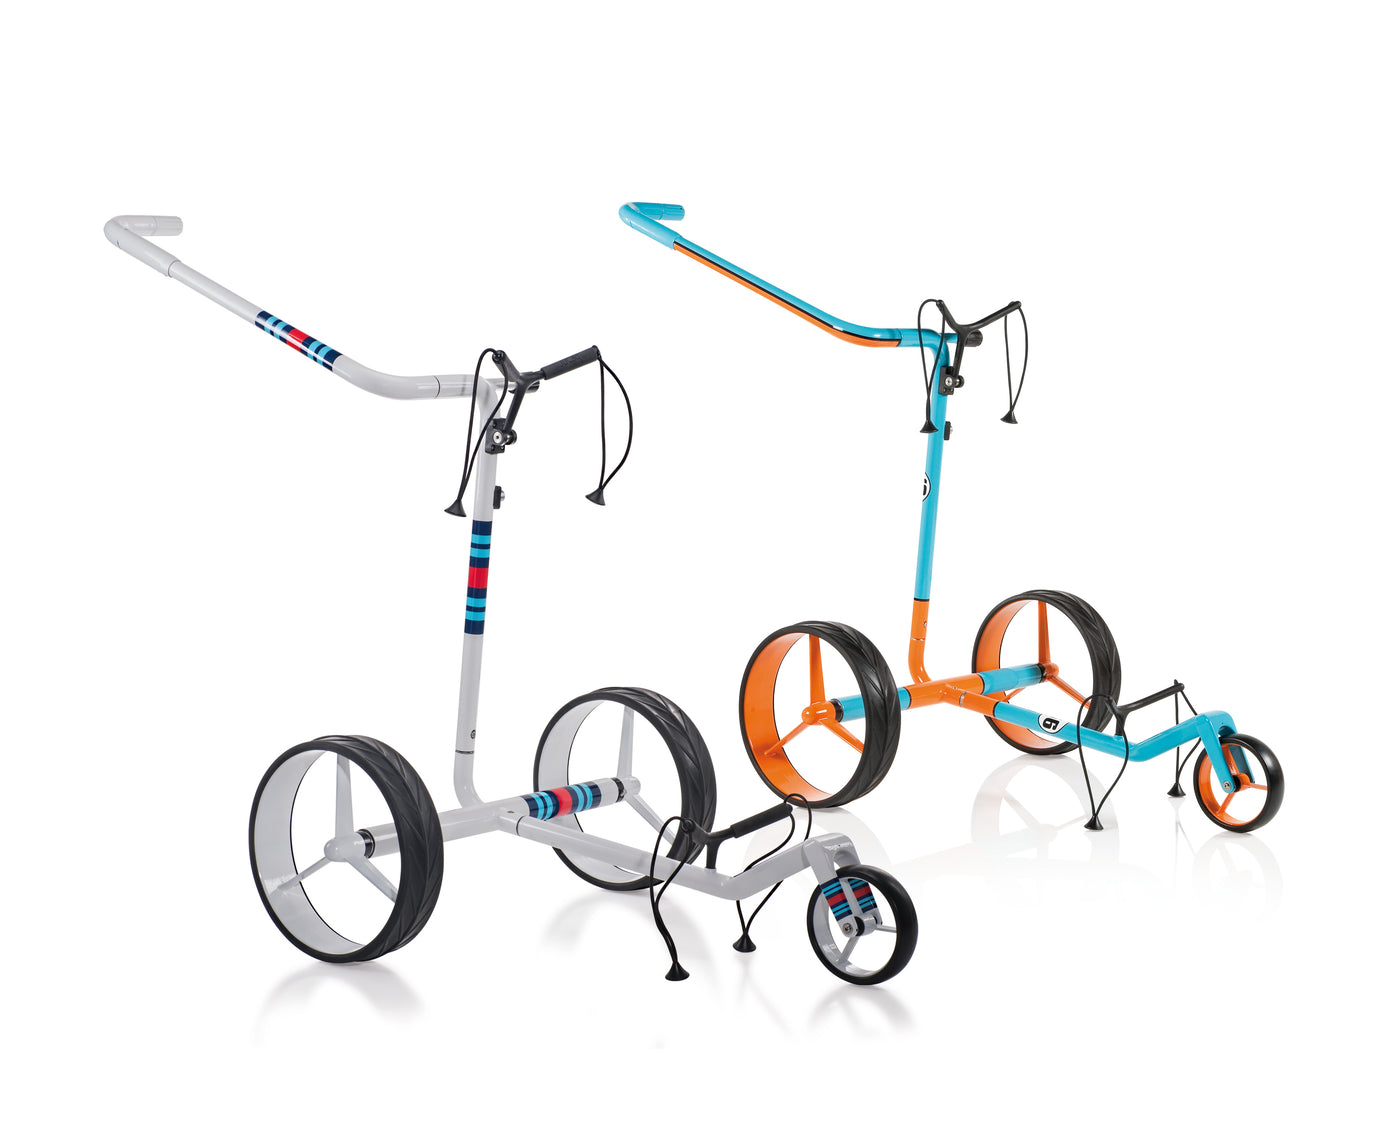 Chariot de golf électrique JuCad Carbon Travel Racing 2.0 - le chariot sportif en carbone en édition limitée